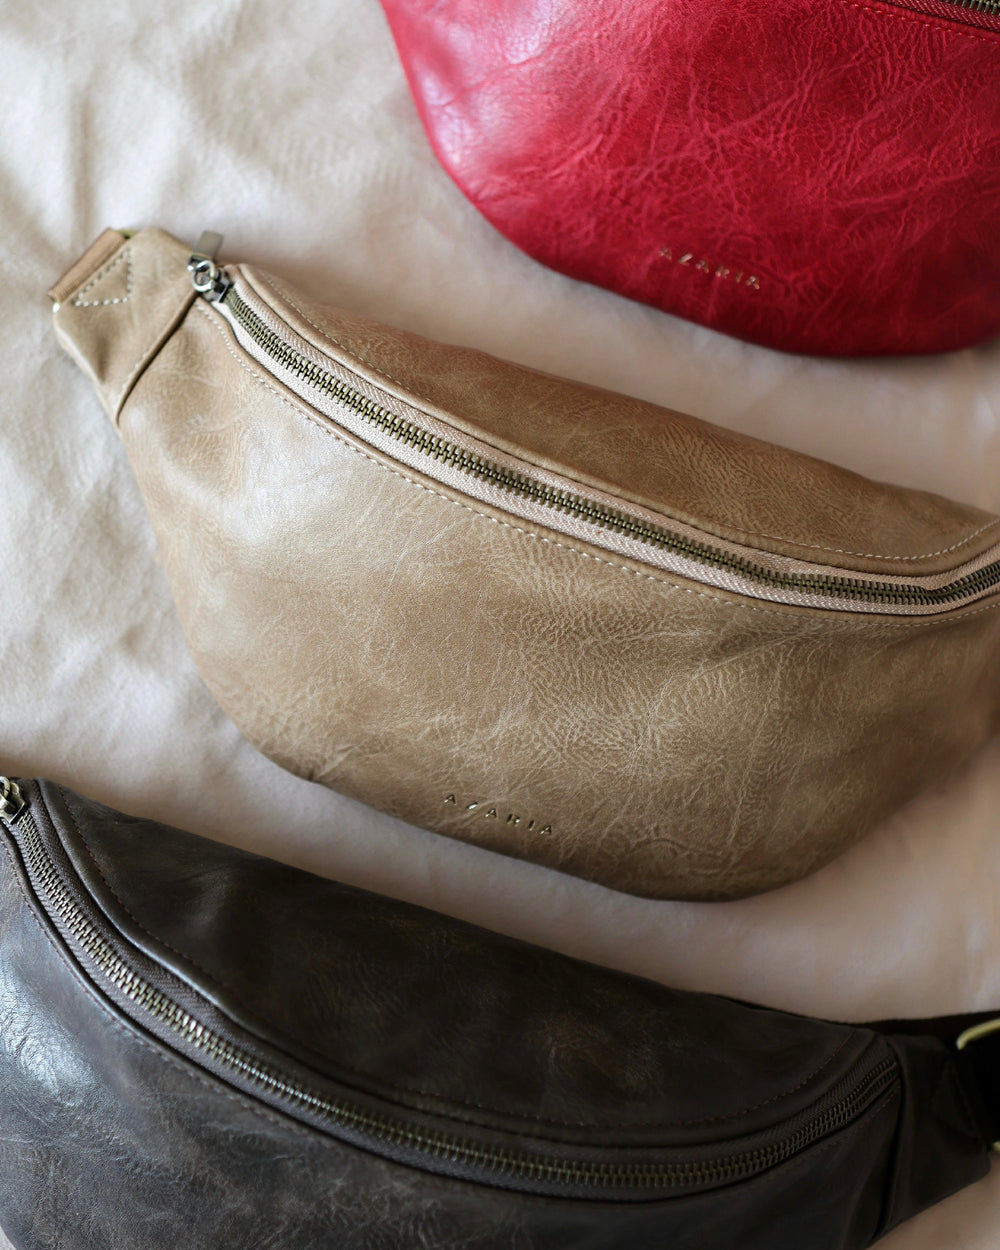 Designer Bumbags, Fanny Packs, & Belt Bags for Women, Men